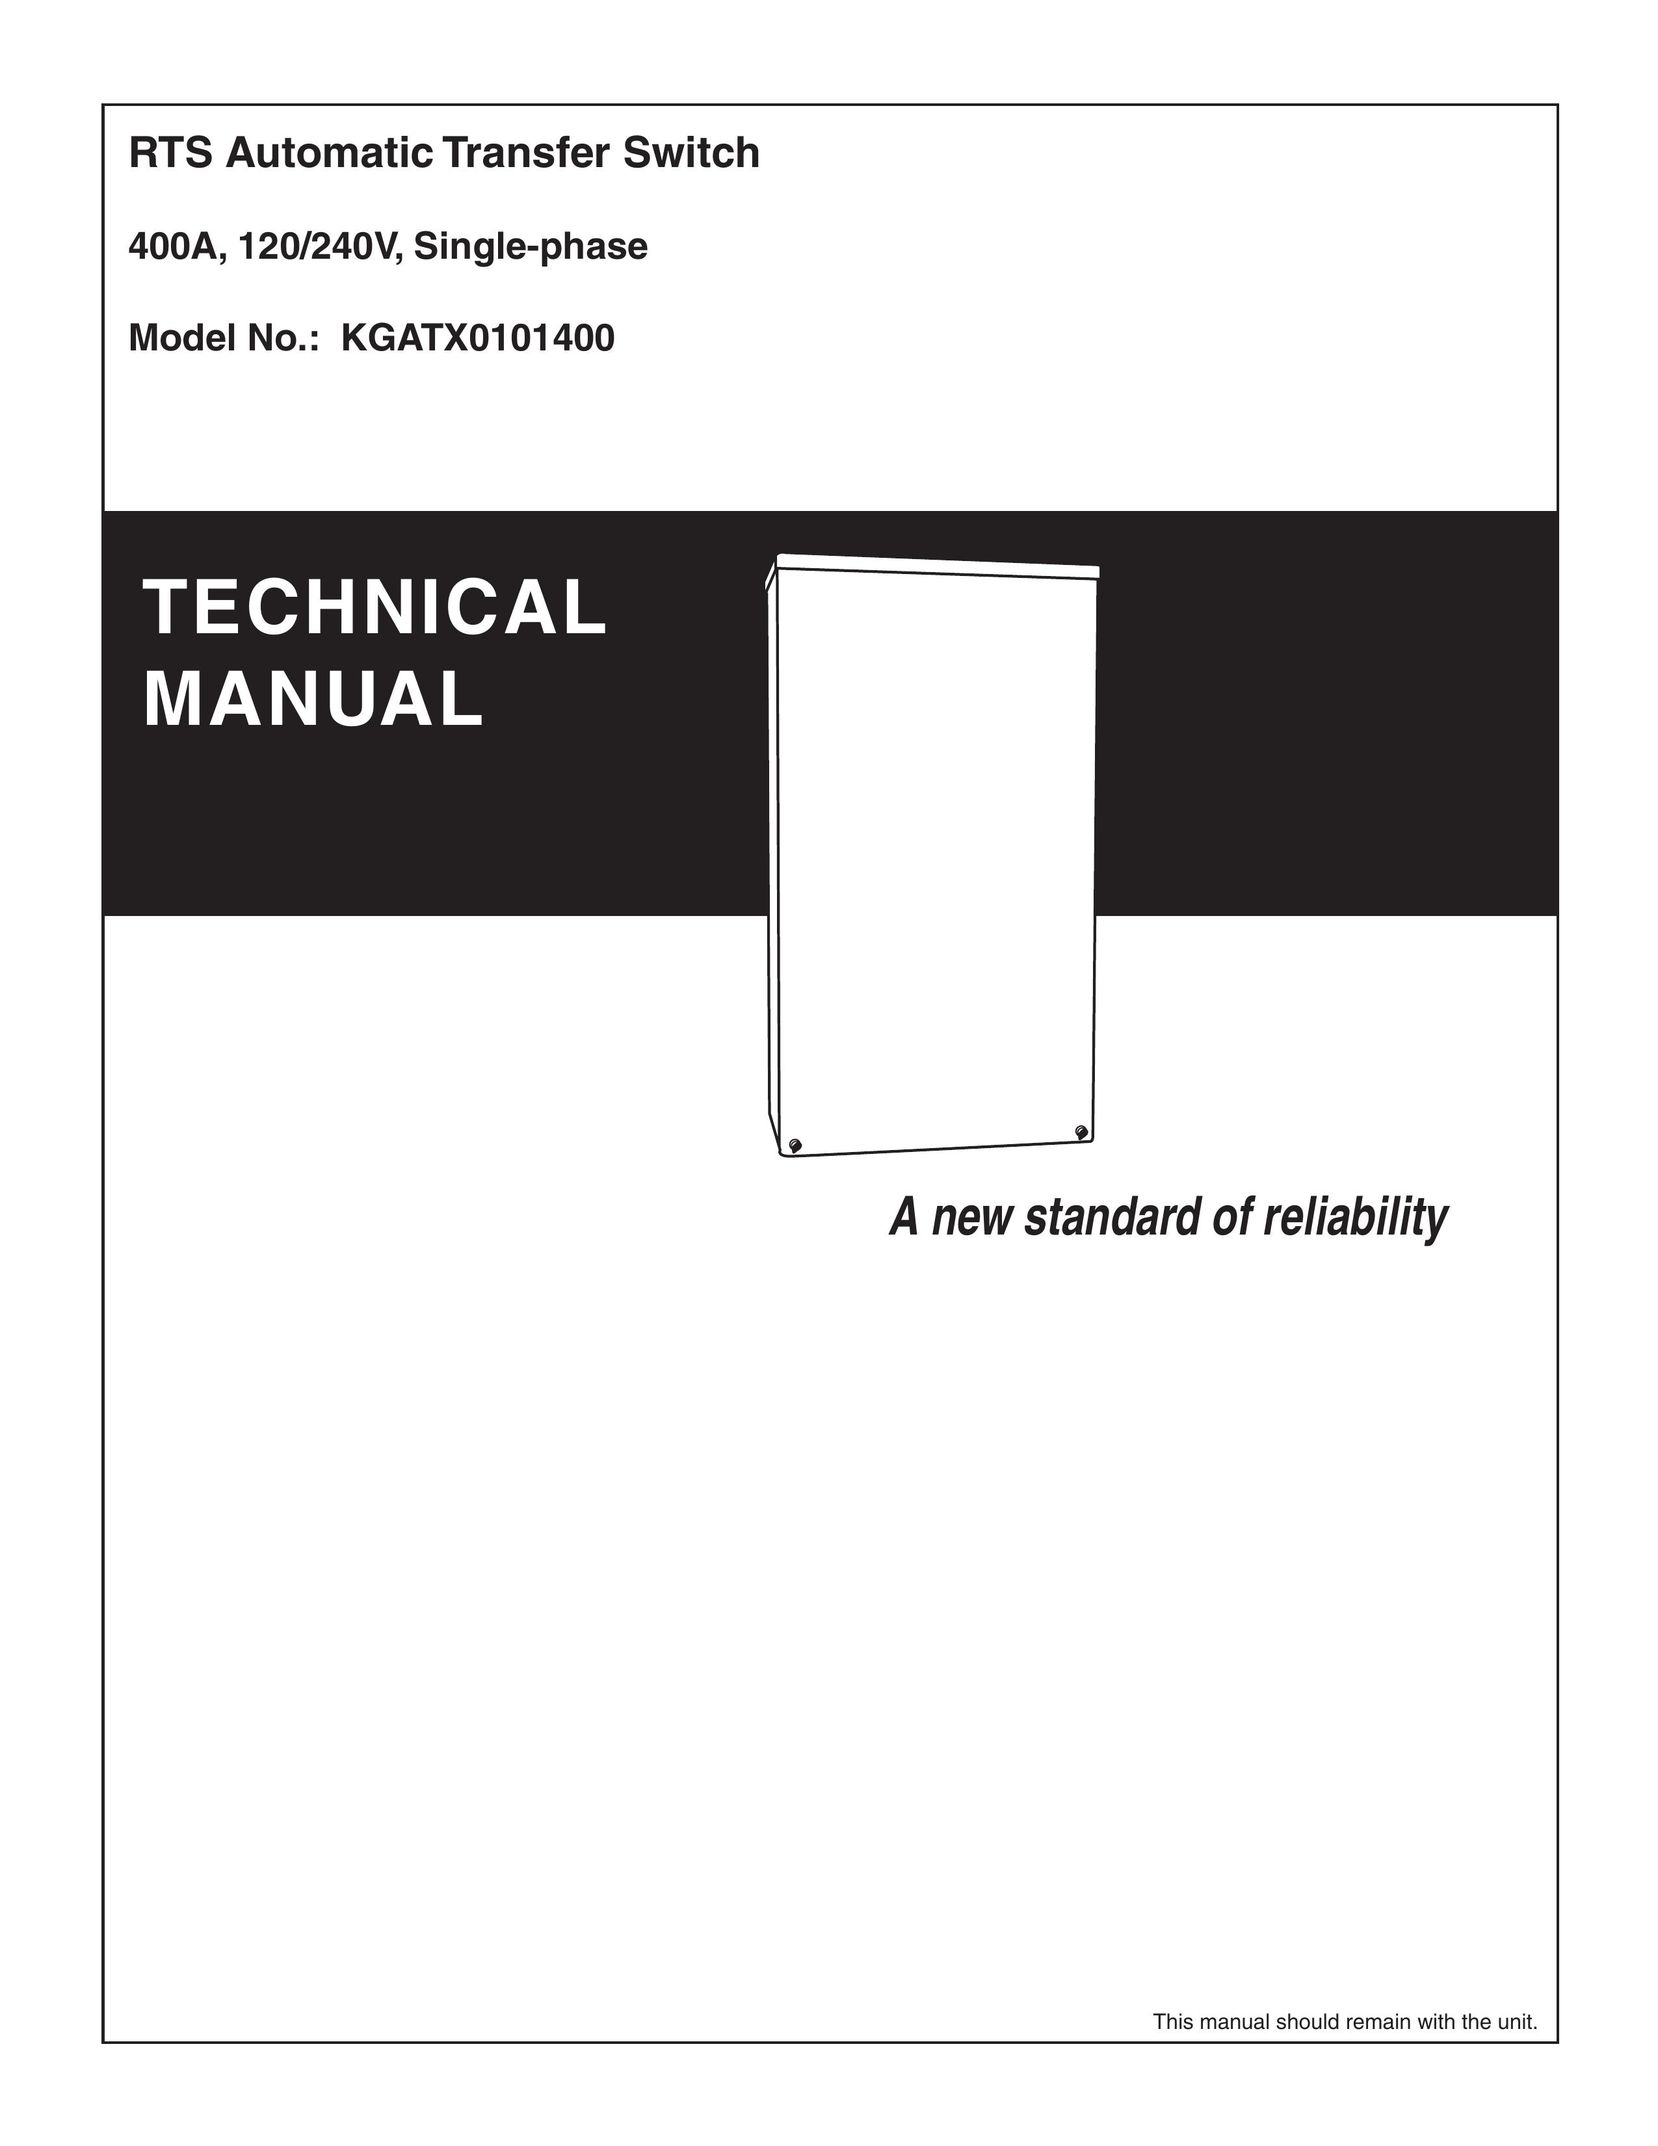 RTS KGATX0101400 Switch User Manual